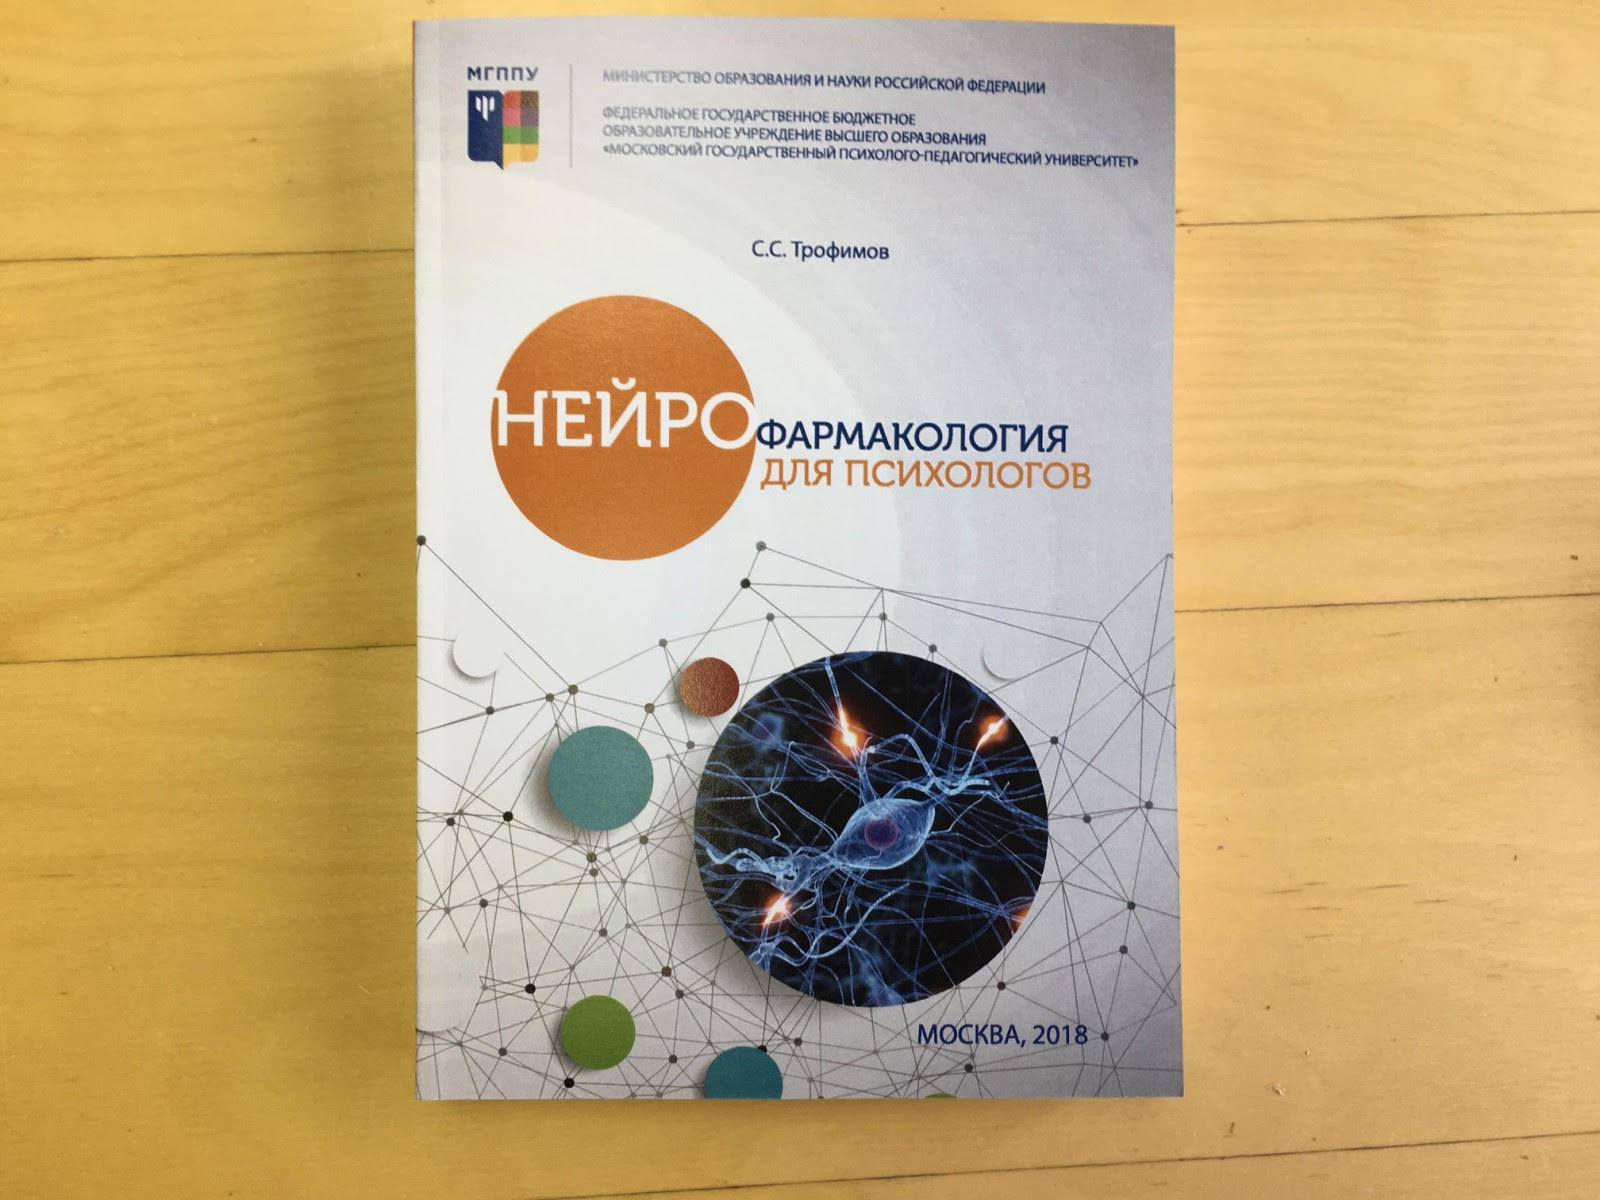 В издательстве МГППУ вышел учебник «Нейрофармакология для психологов»